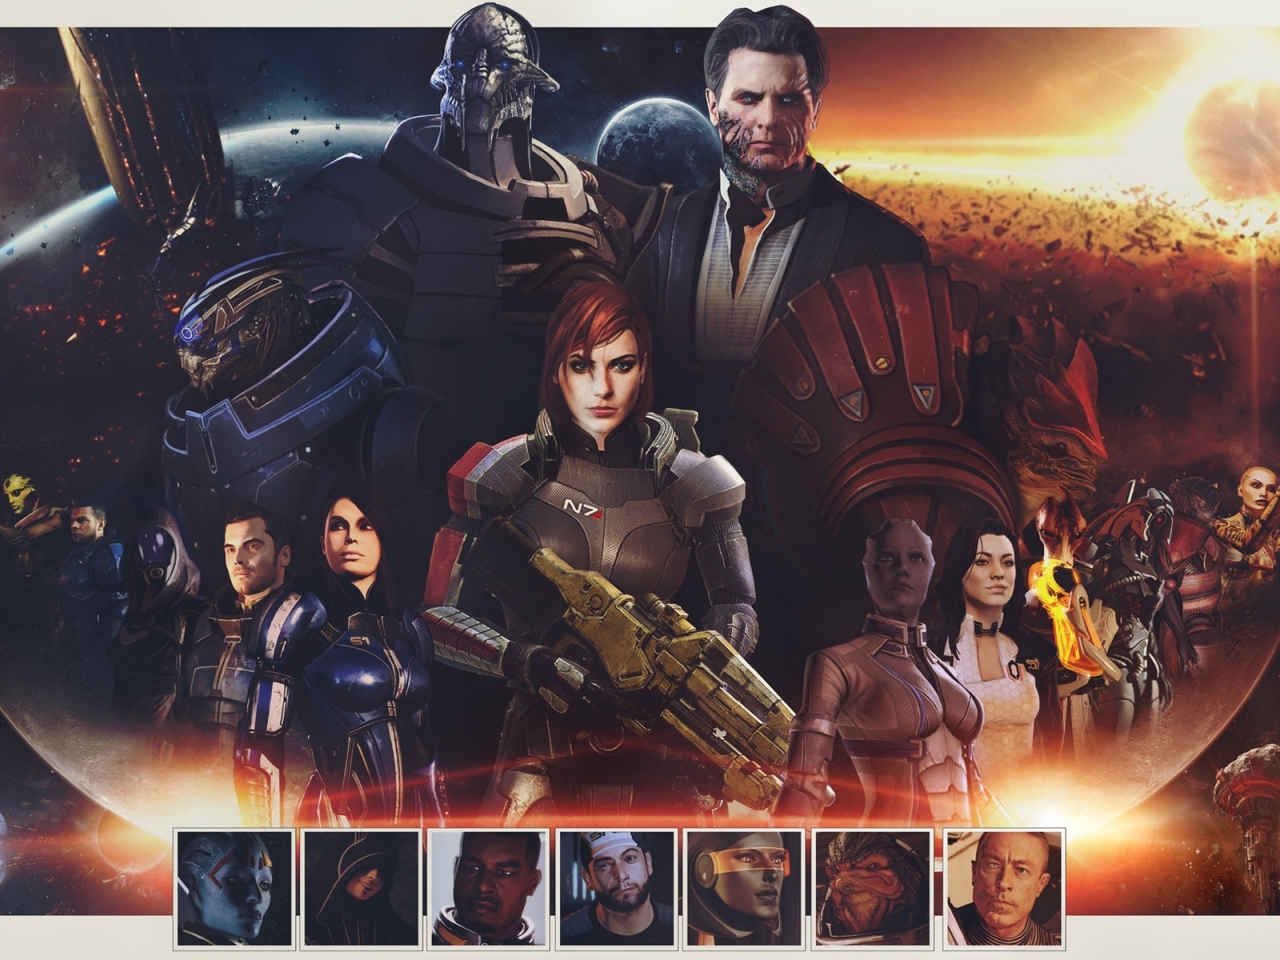 Mass Effect Zaeed Massani for 1280 x 960 resolution